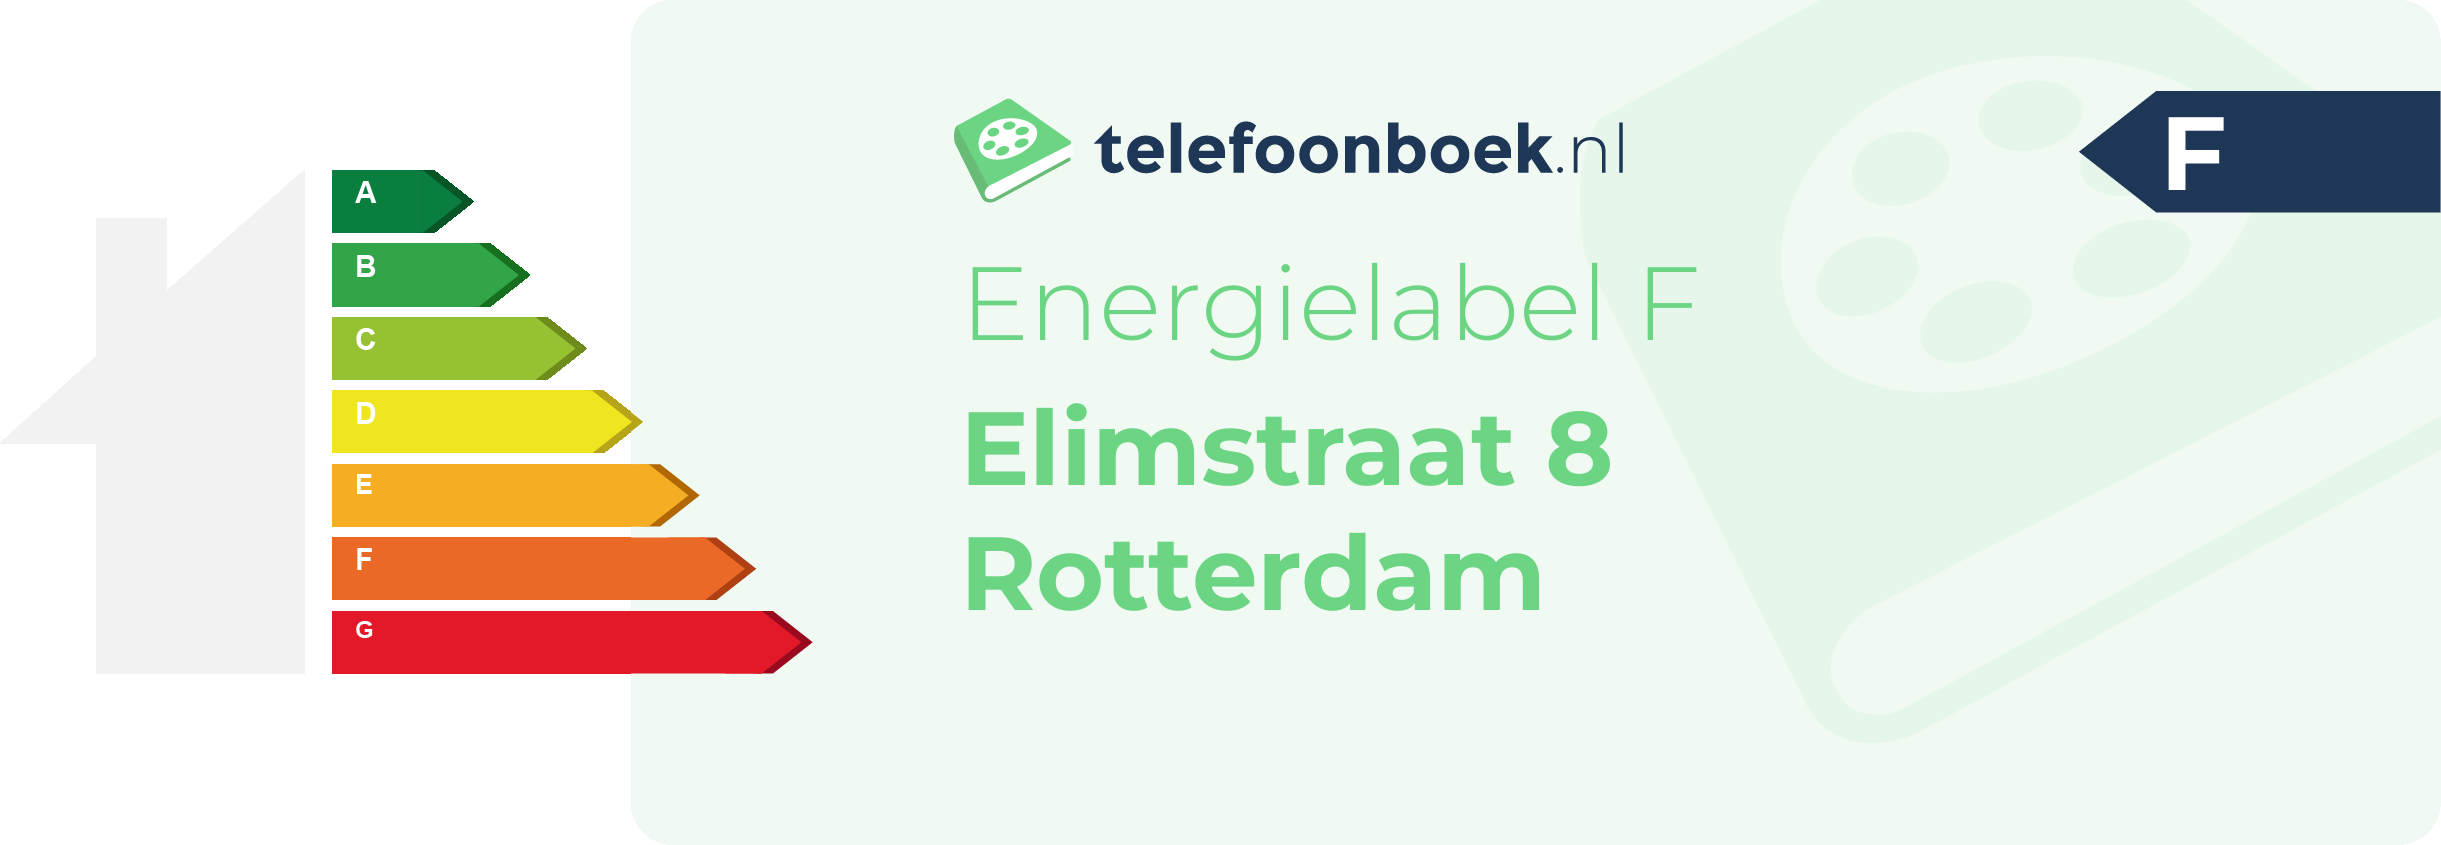 Energielabel Elimstraat 8 Rotterdam